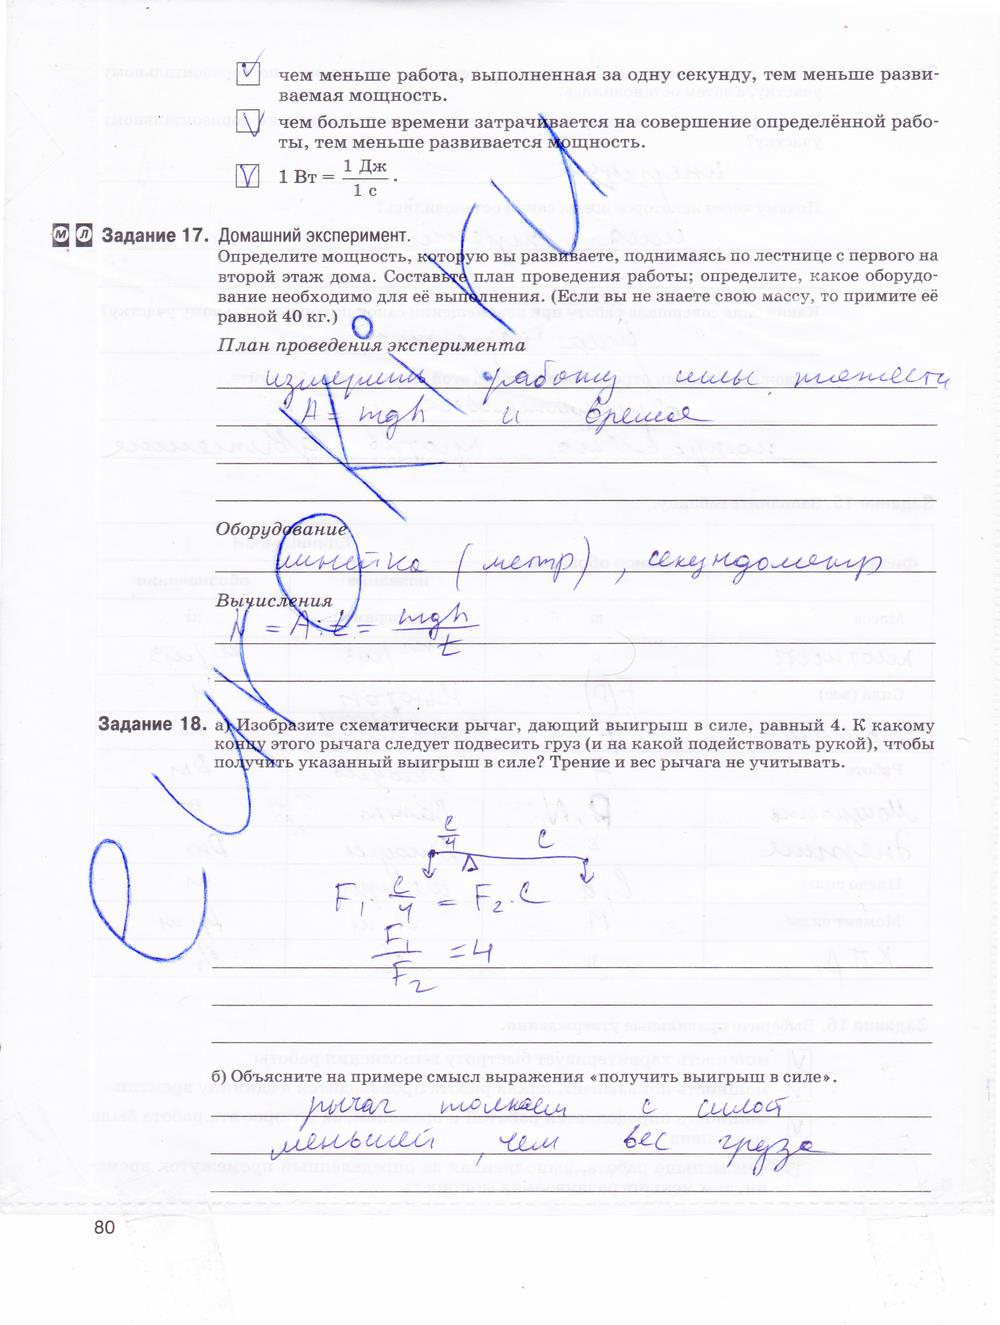 гдз 9 класс рабочая тетрадь страница 80 физика Гутник, Власова